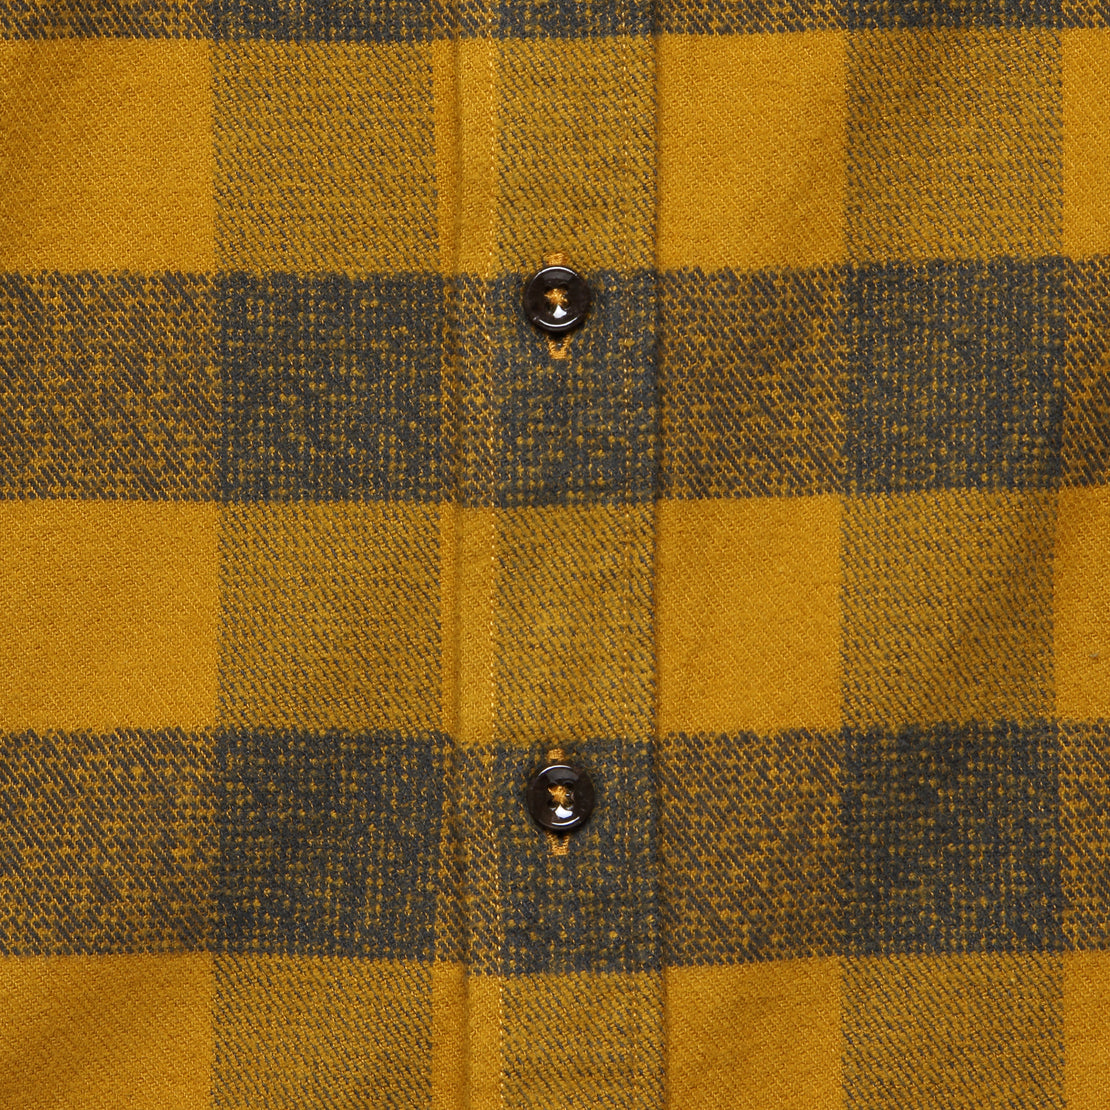 Yosemite Shirt - Saffron Buffalo Check - Taylor Stitch - STAG Provisions - Tops - L/S Woven - Plaid